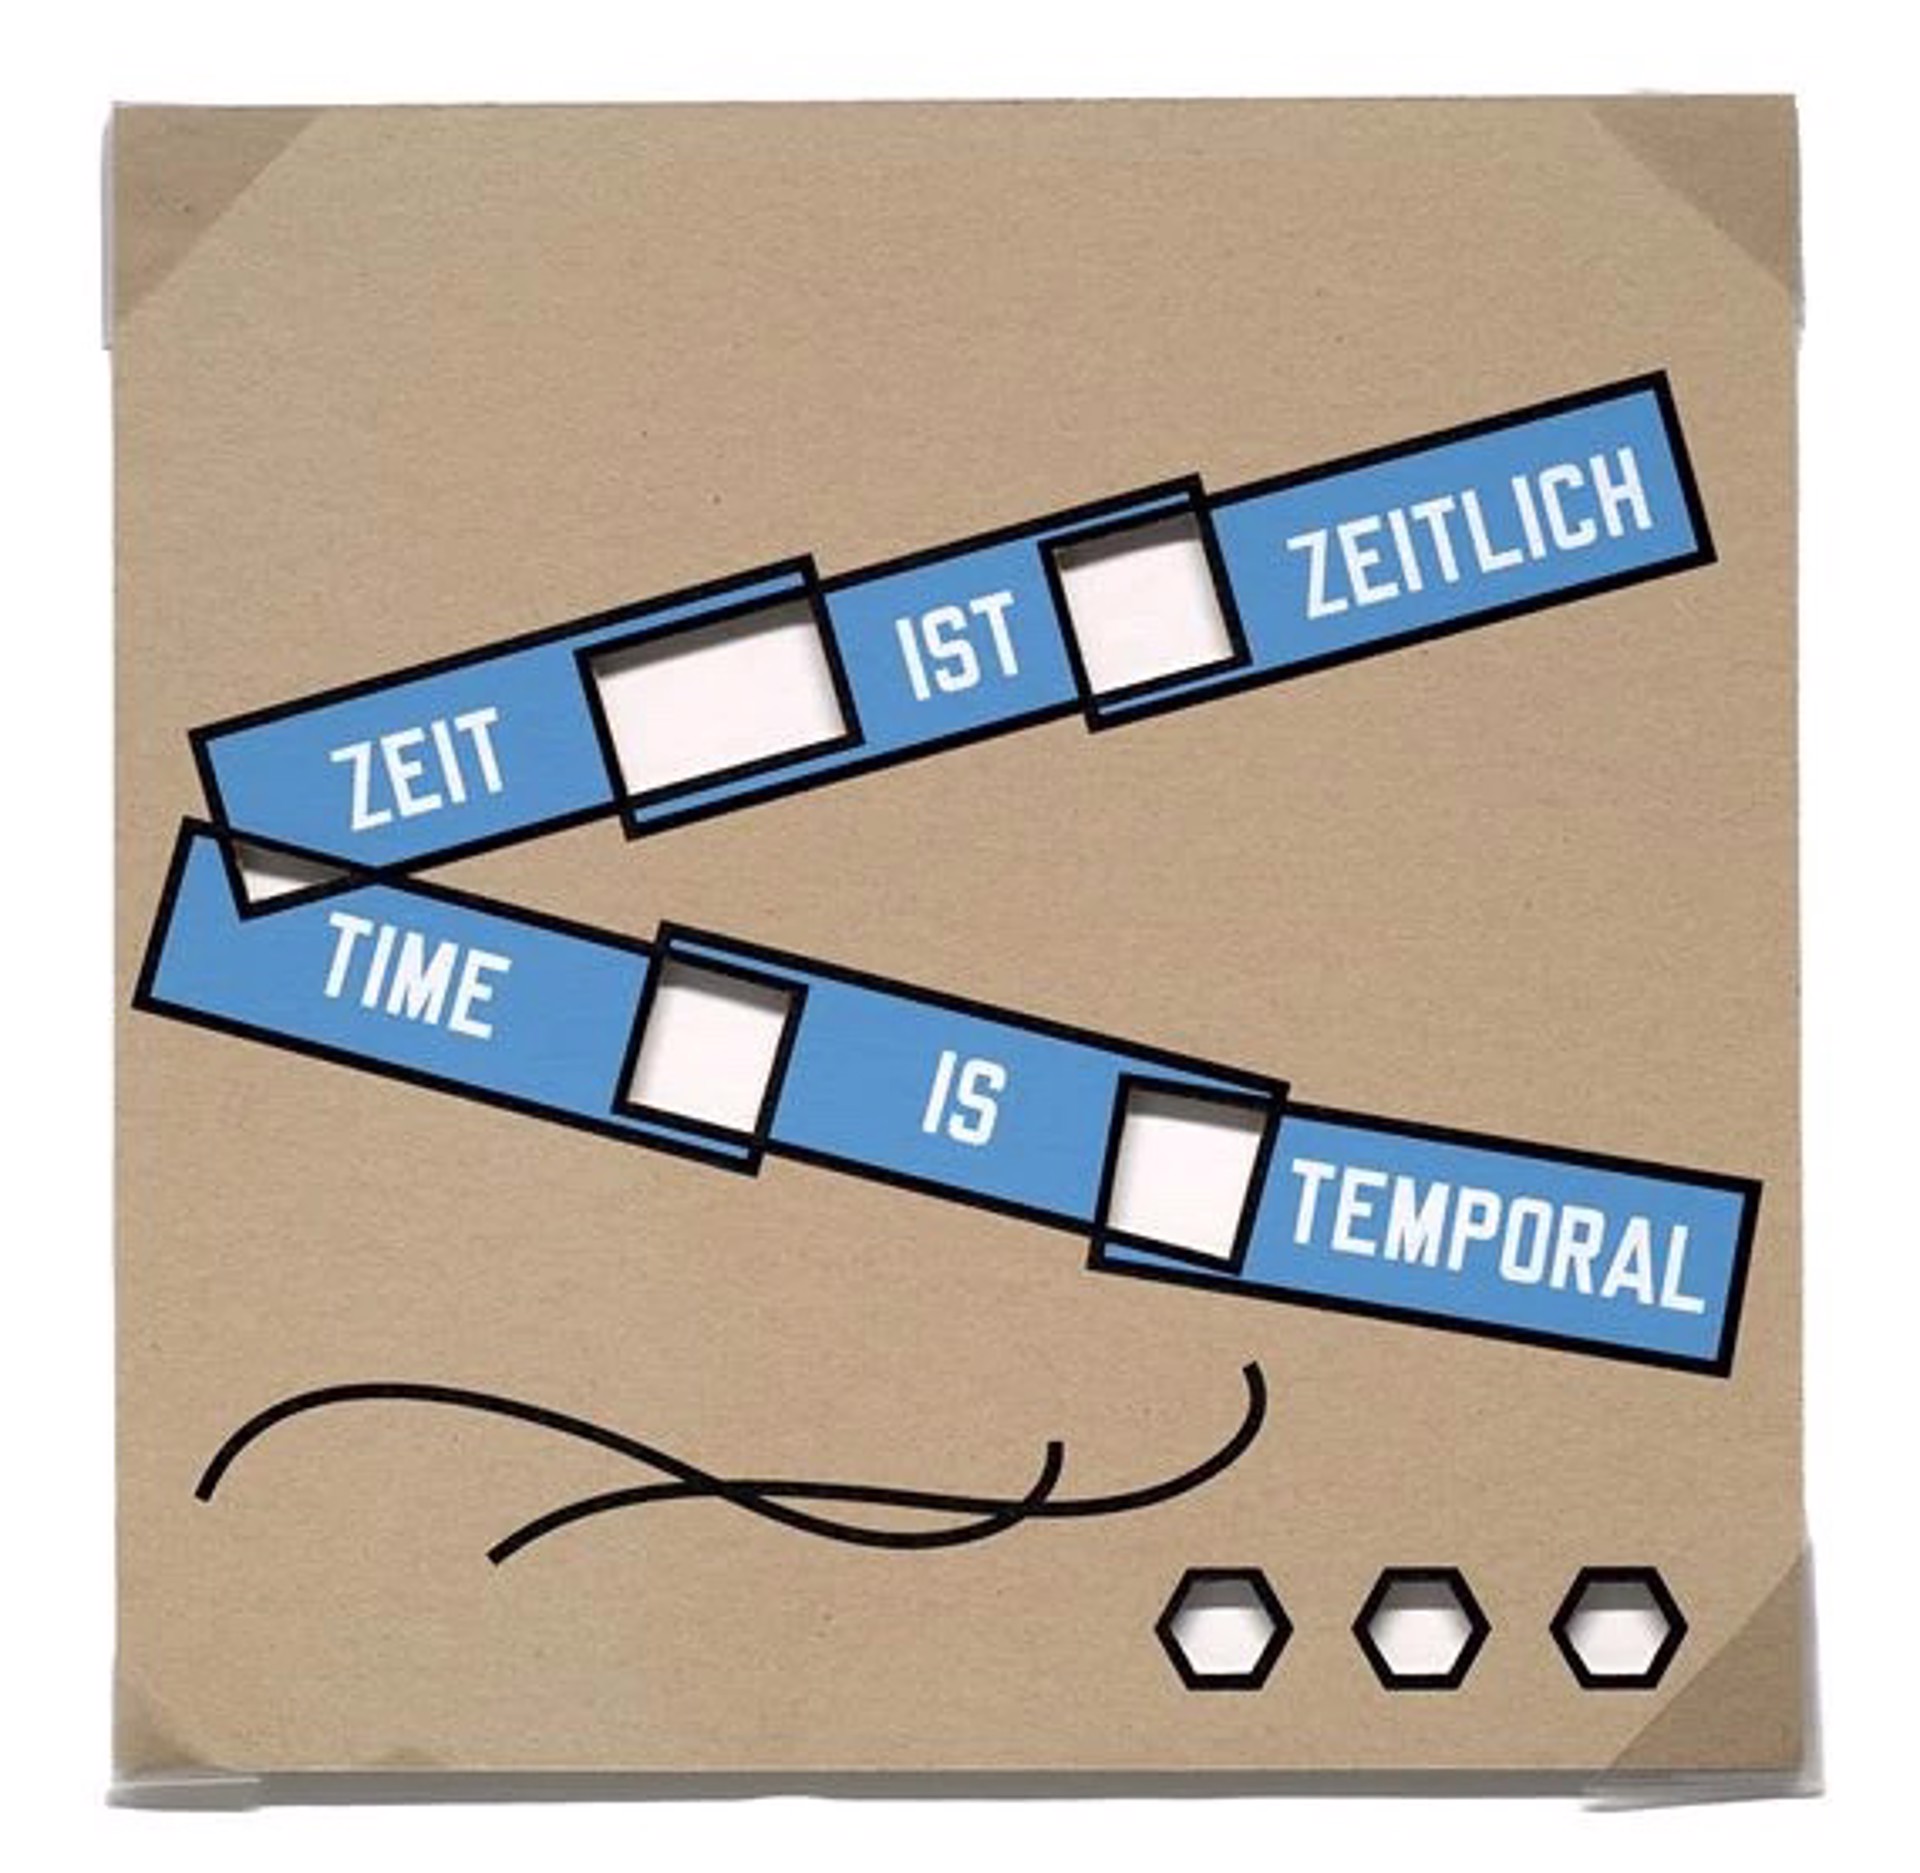 Zeit ist zeitlich/ time is temporal by Lawrence Weiner